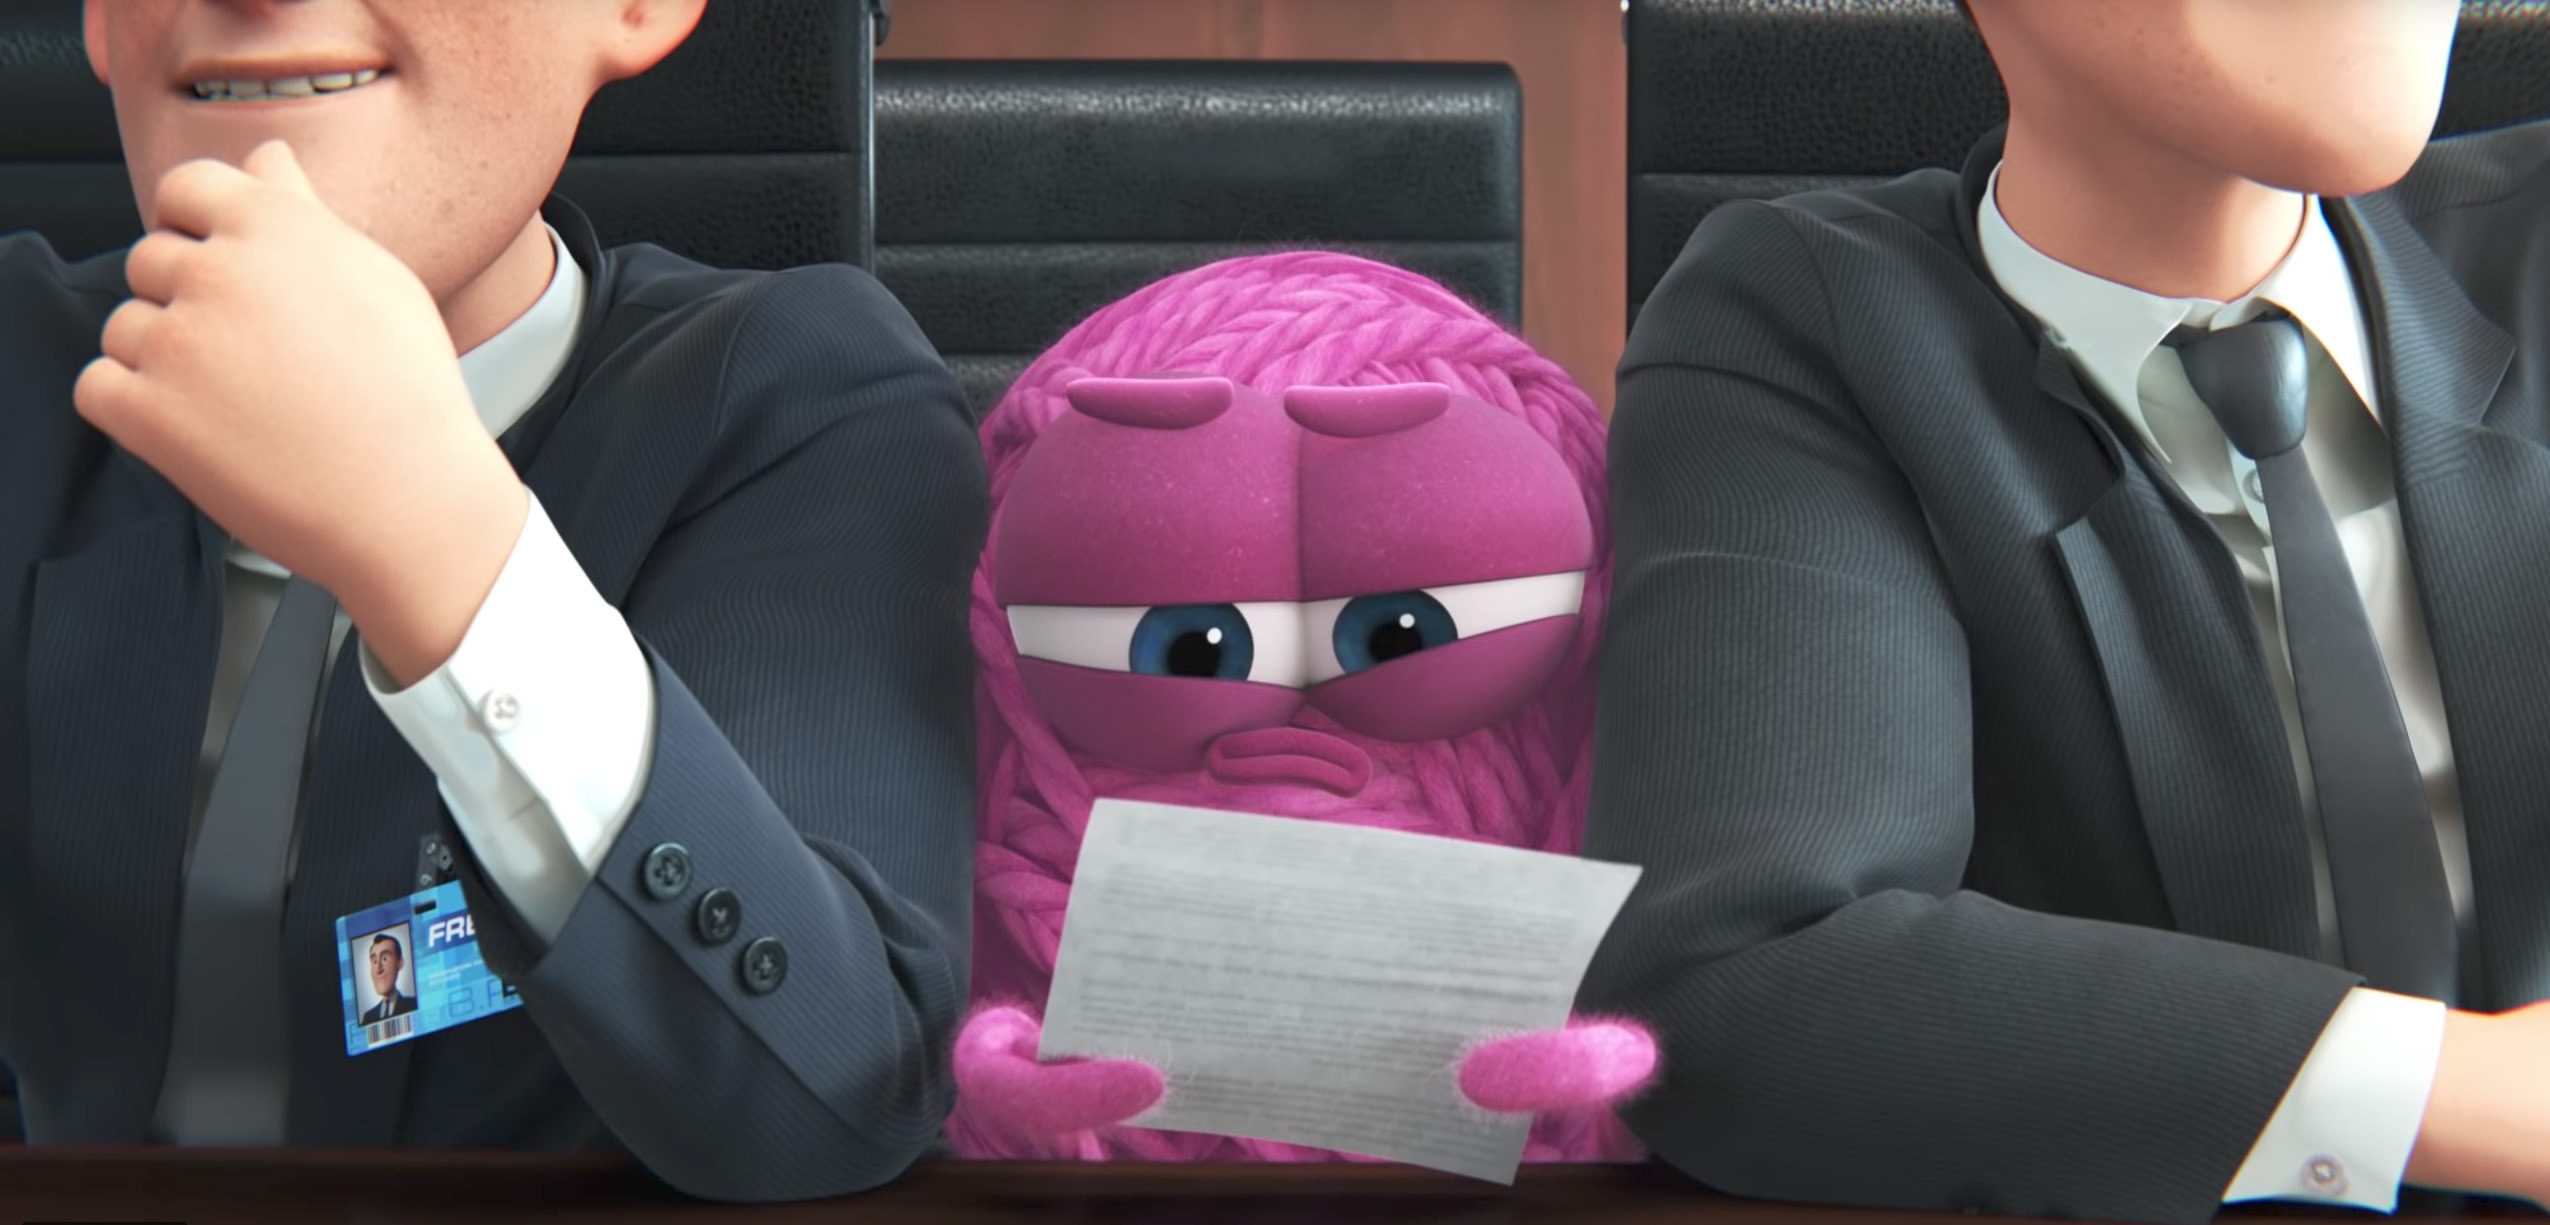 Nuevo corto de Pixar revela los problemas que enfrentan las mujeres en su vida laboral